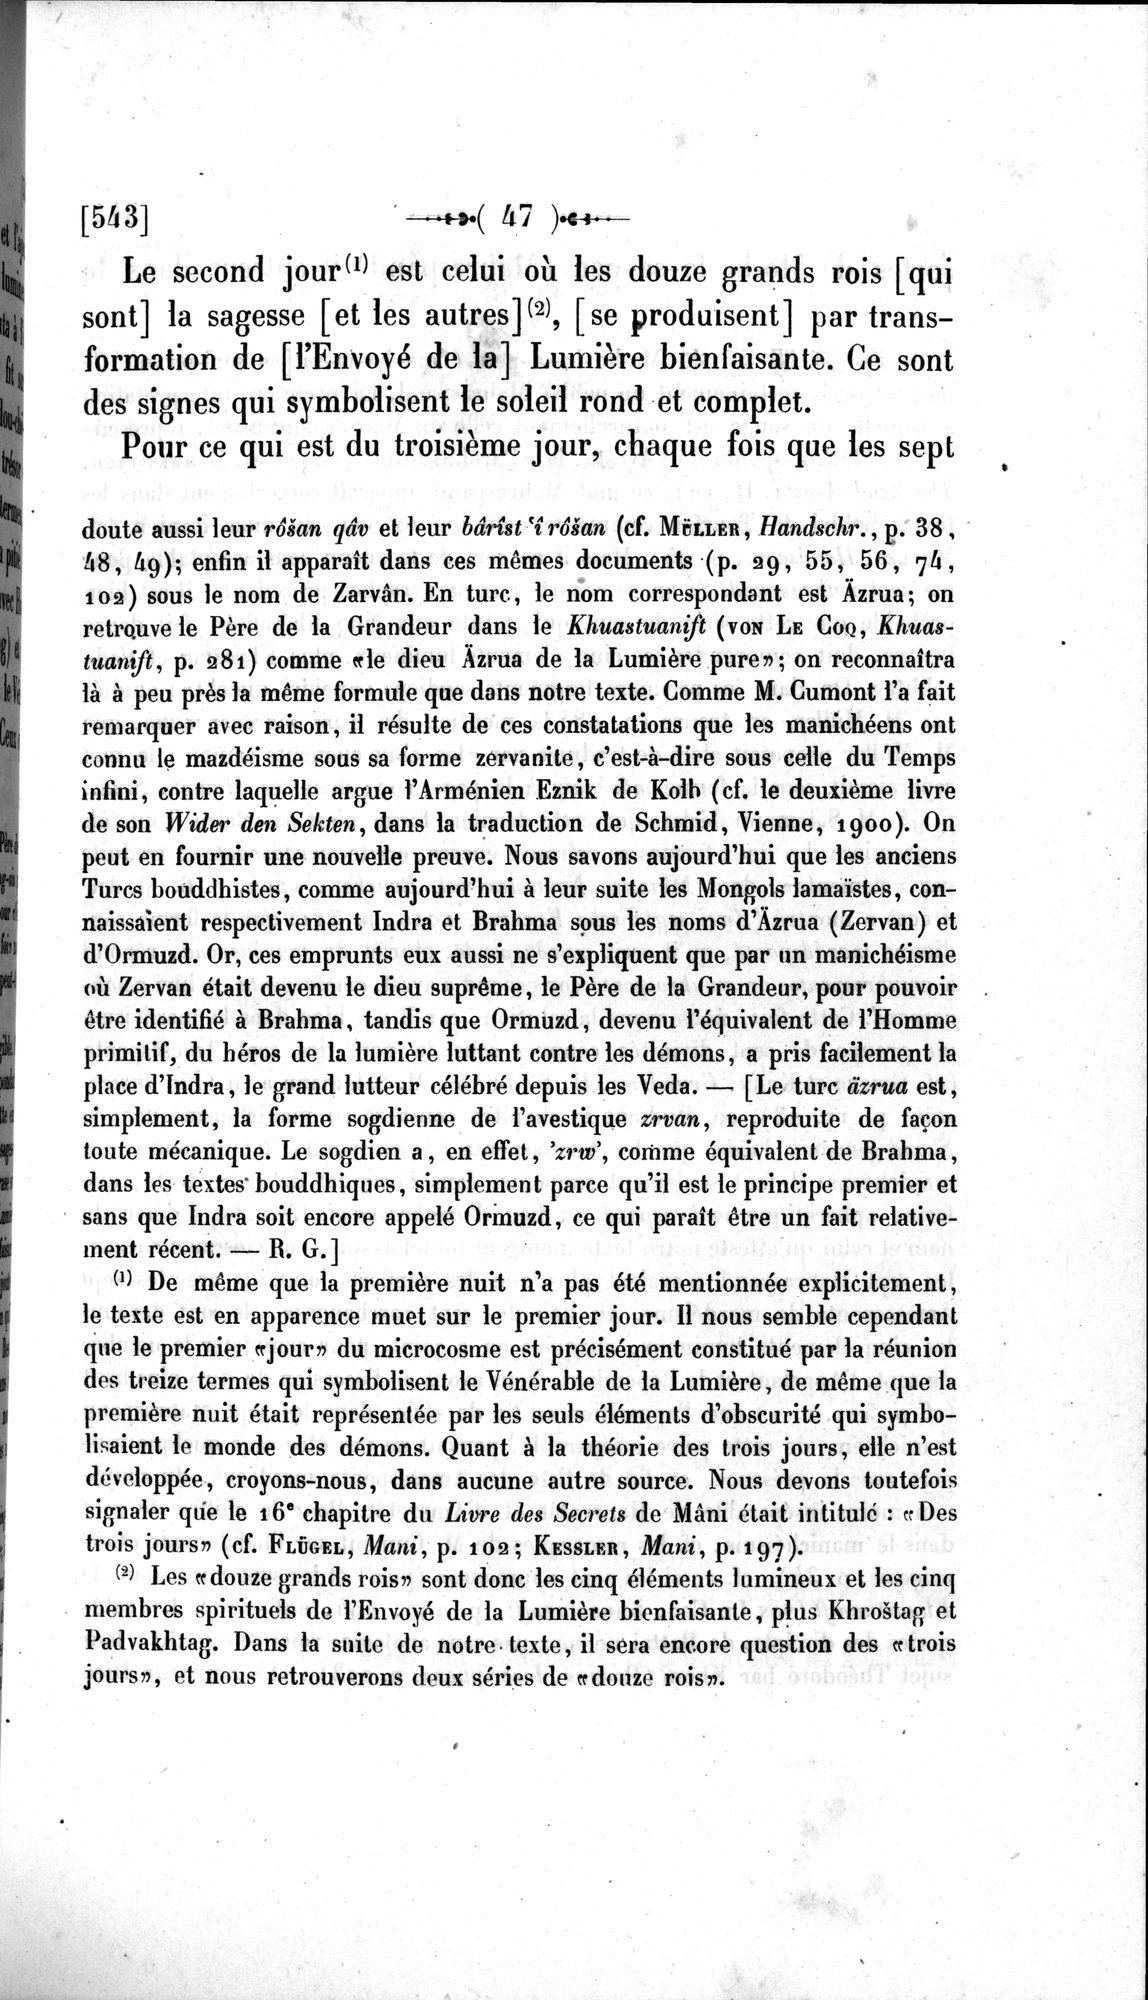 Un traité manichéen retrouvé en Chine : vol.1 / Page 57 (Grayscale High Resolution Image)